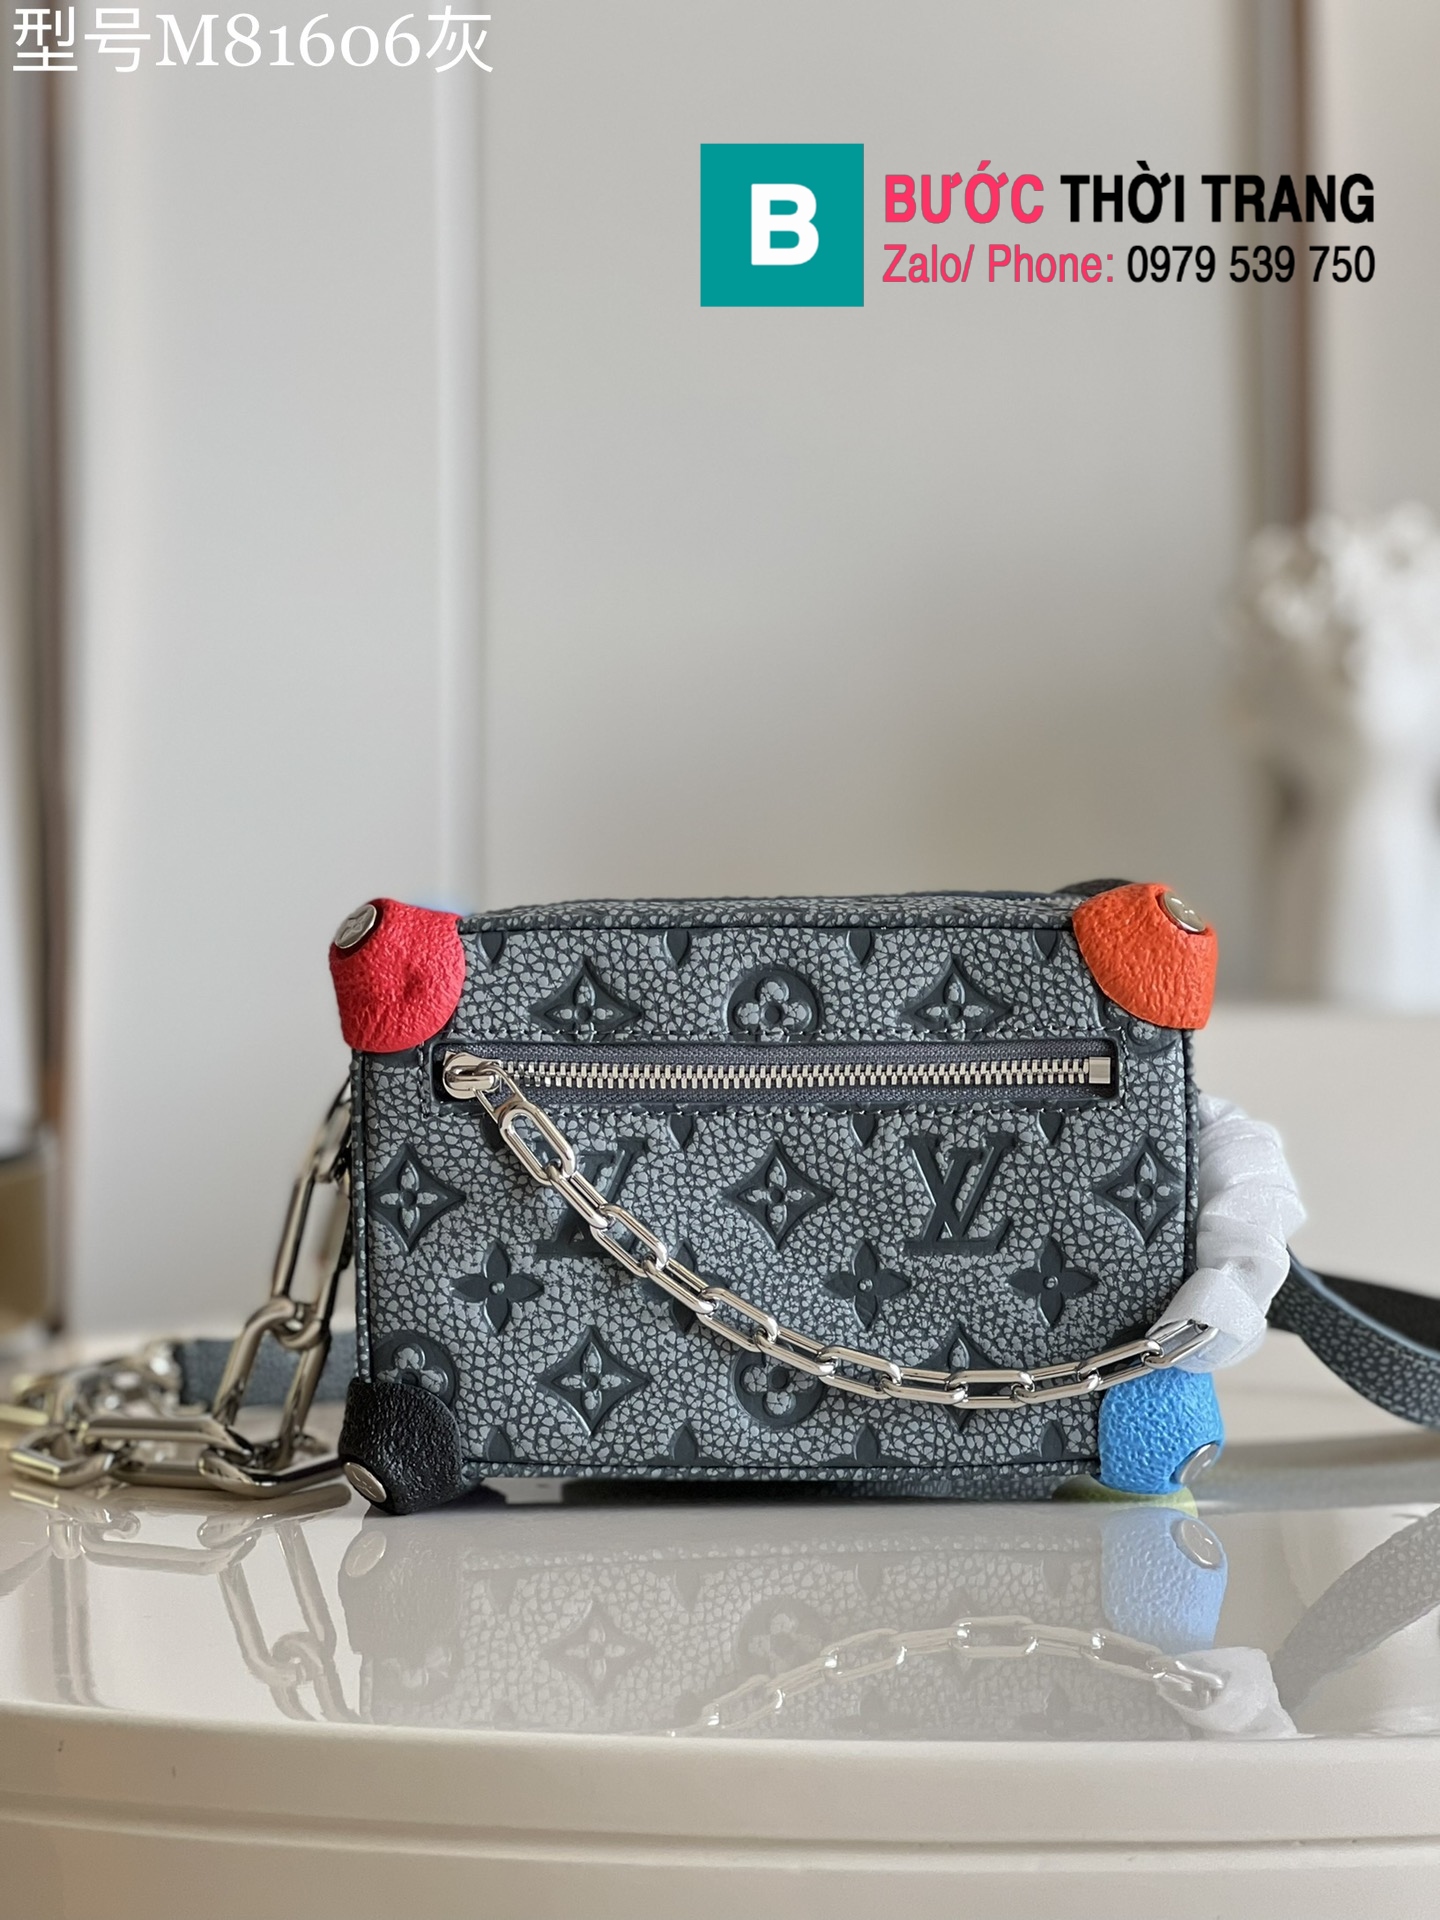 Túi LV nam Mini Soft Trunk Chalk màu xanh nhạt size 18cm – M81606